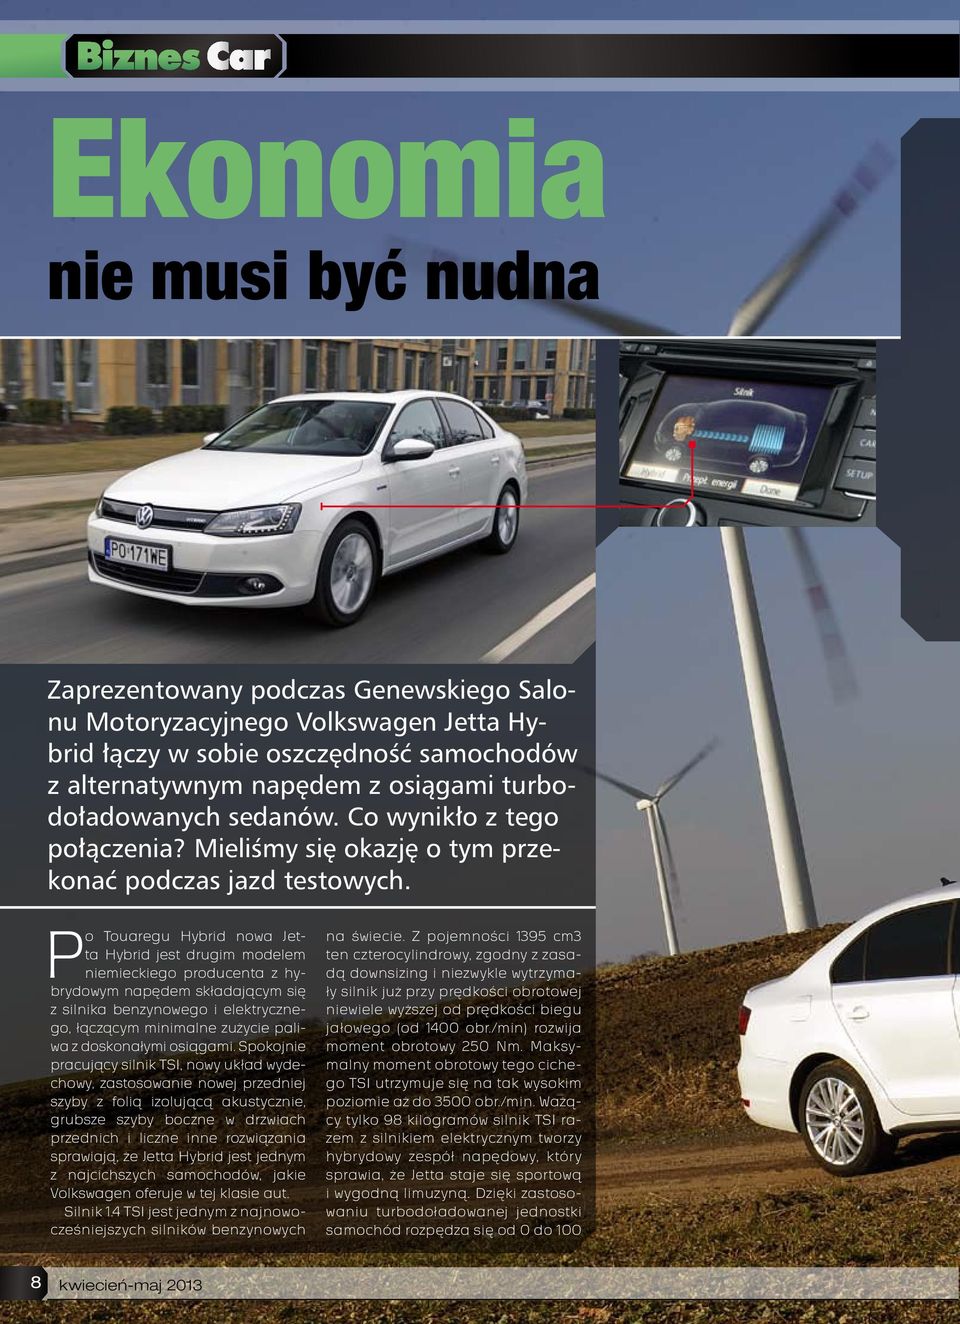 Po Touaregu Hybrid nowa Jetta Hybrid jest drugim modelem niemieckiego producenta z hybrydowym napędem składającym się z silnika benzynowego i elektrycznego, łączącym minimalne zużycie paliwa z